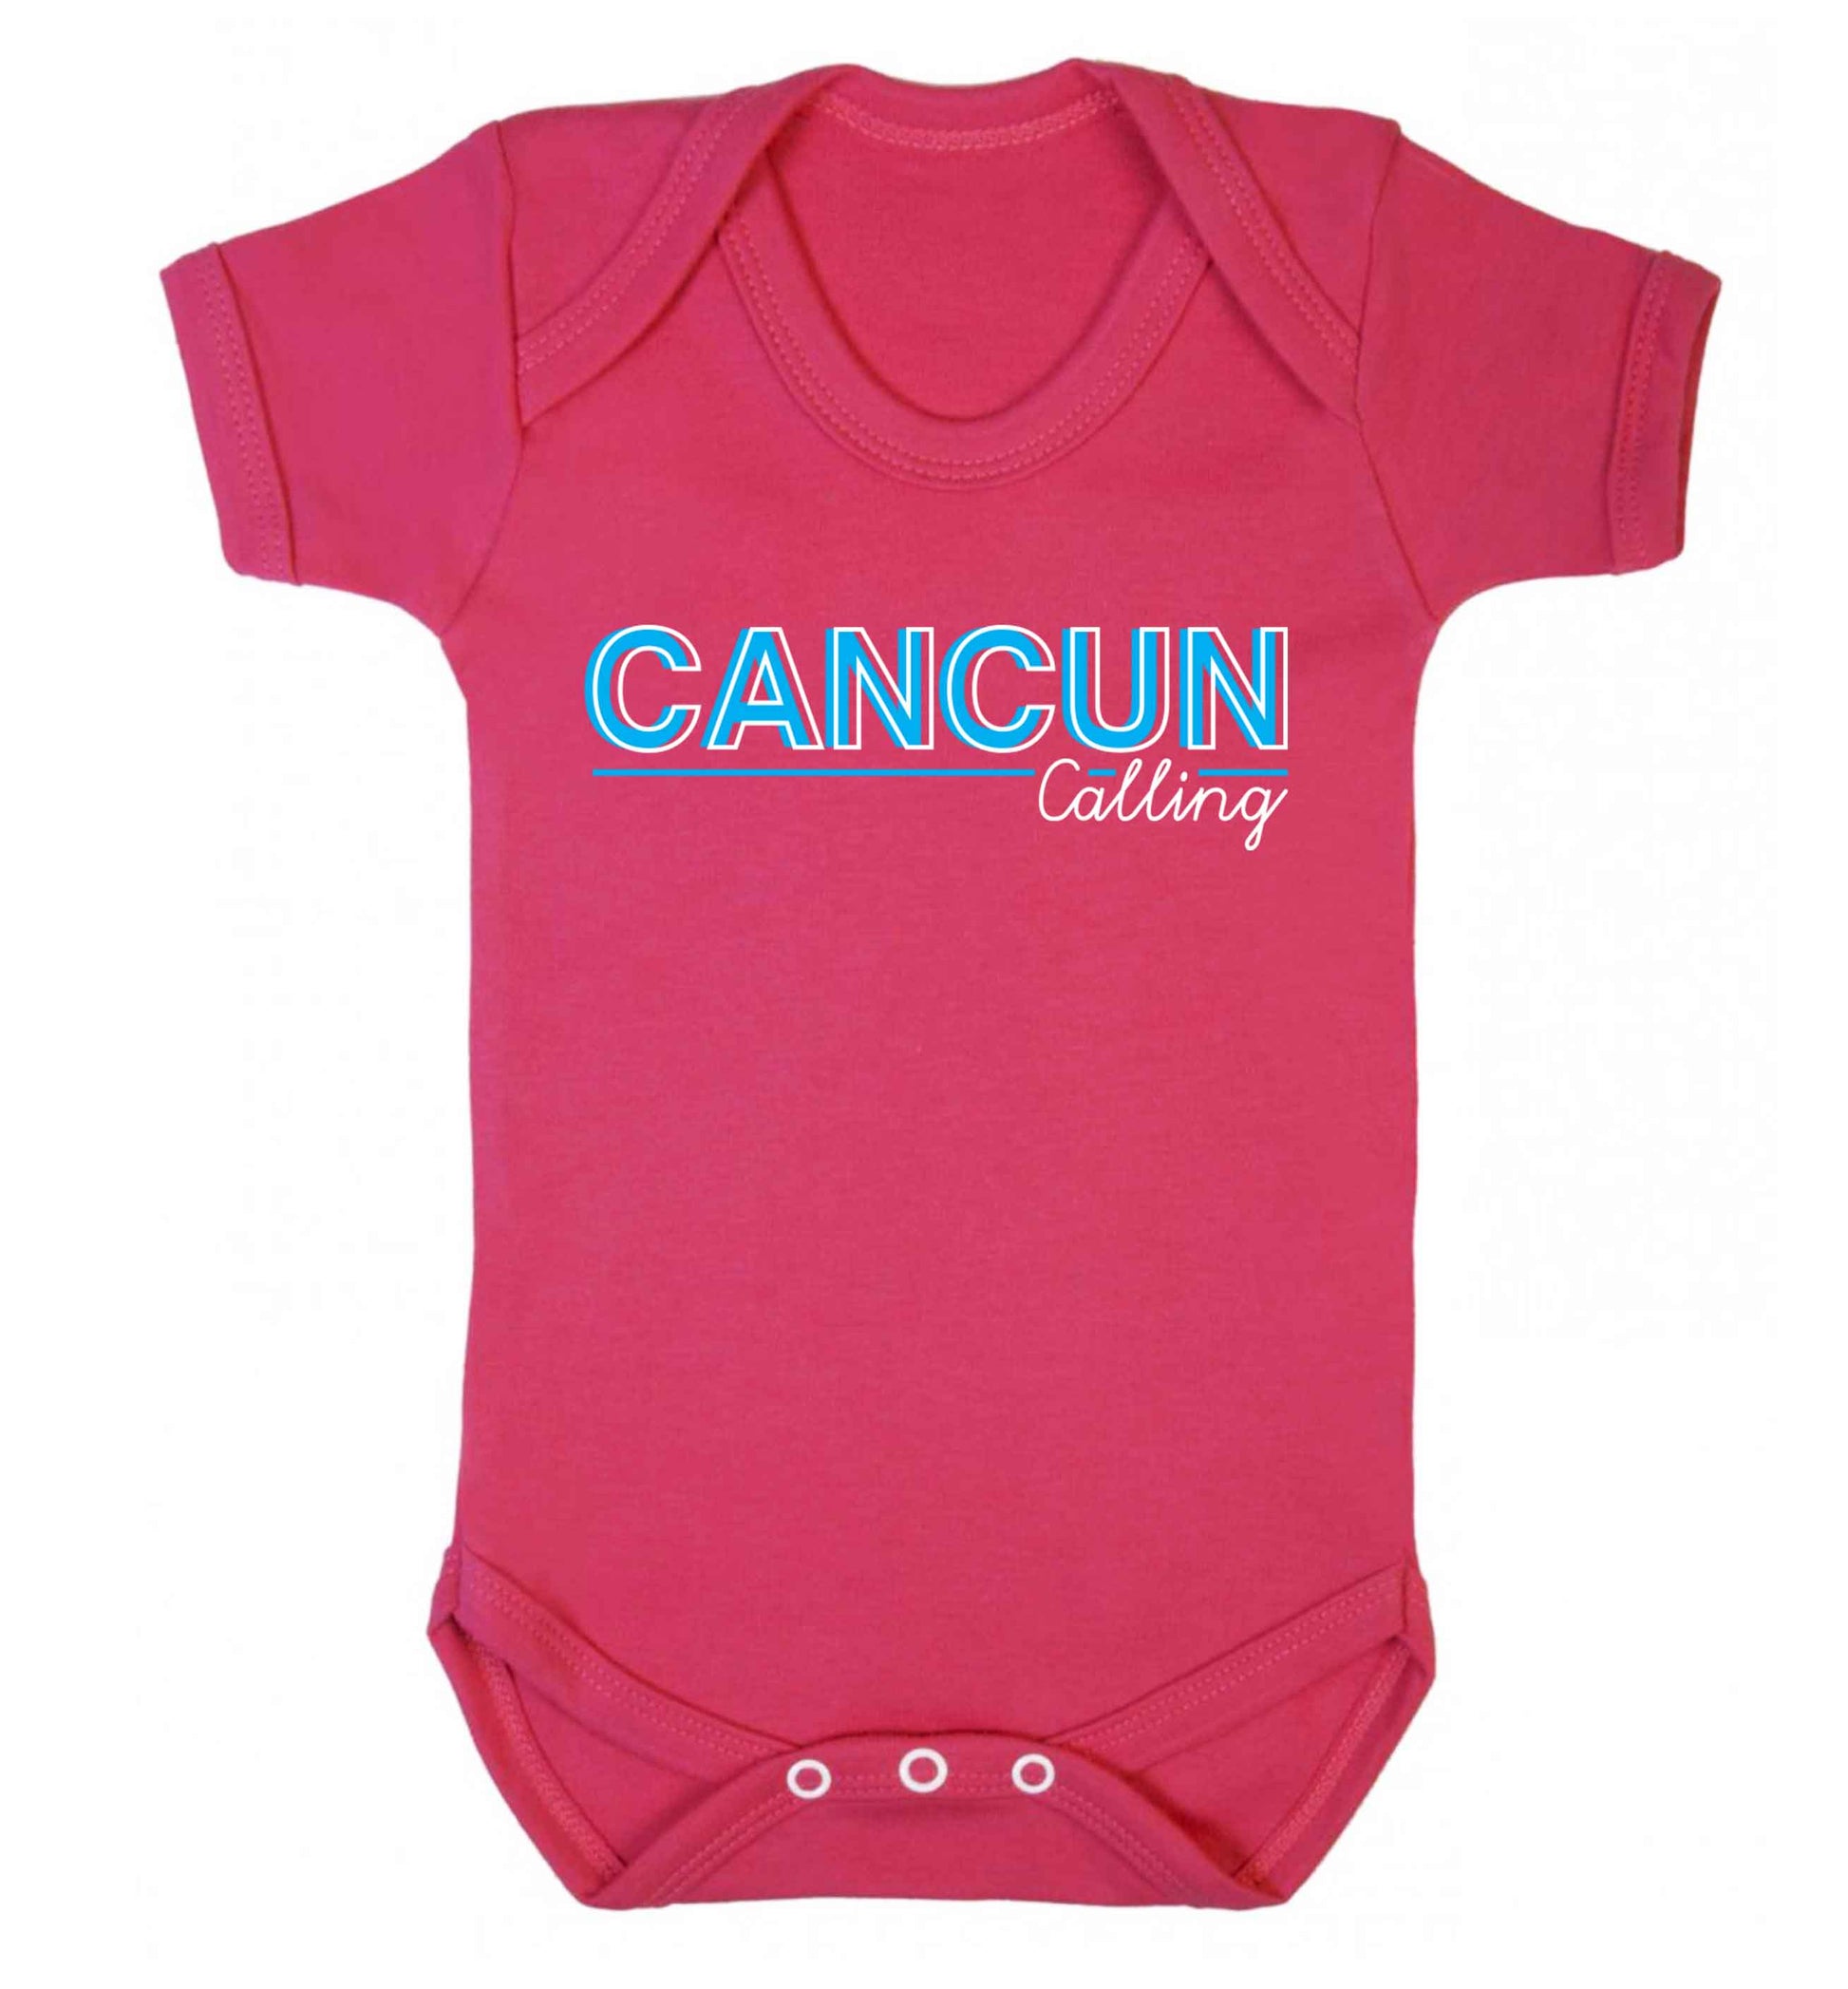 Cancun calling Baby Vest dark pink 18-24 months